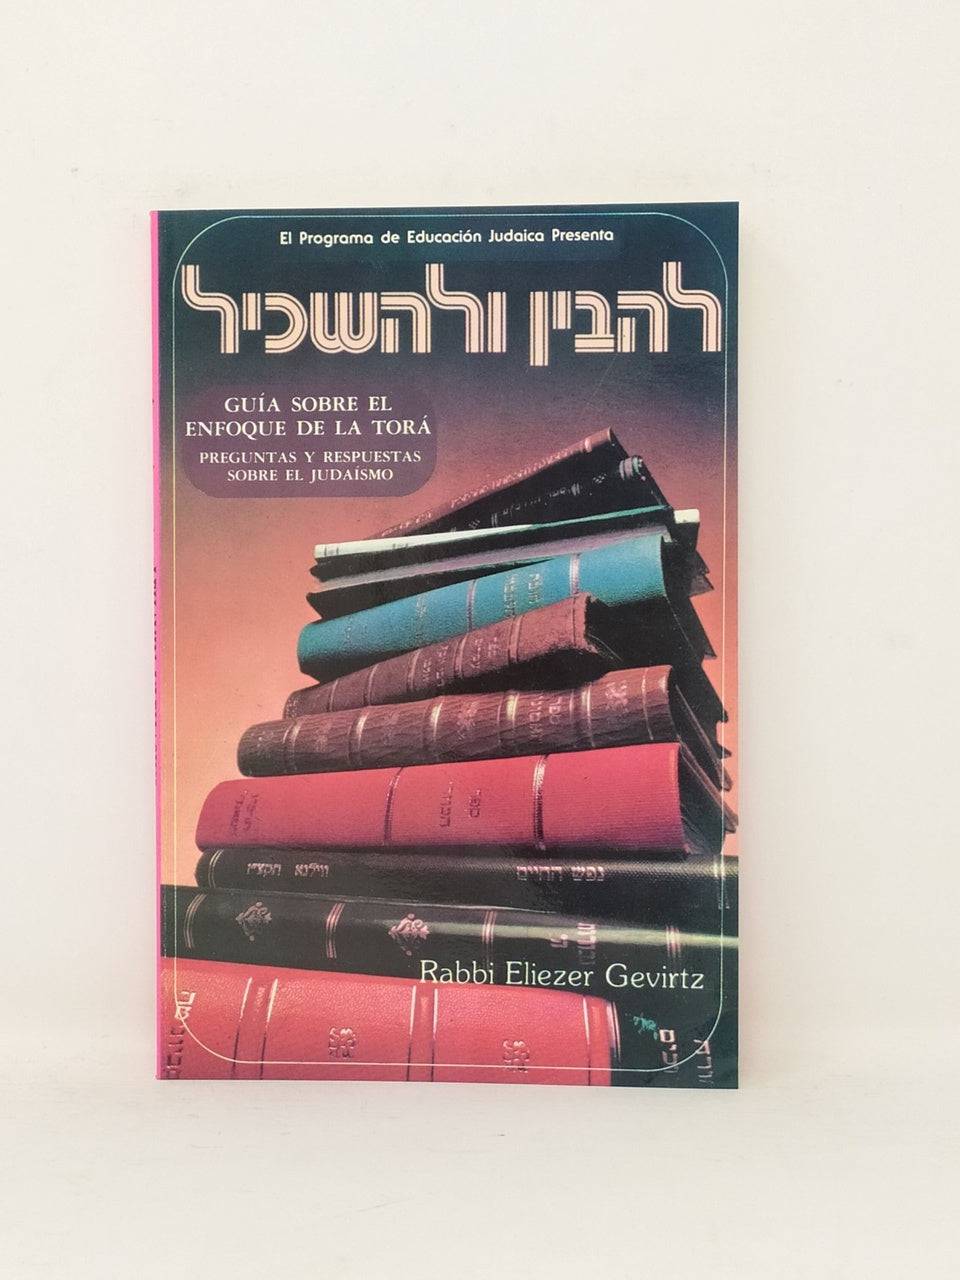 Guia Sobre El Enfoque De La Tora, Lehavin Ulehaskil, - Libreria Jerusalem Centro